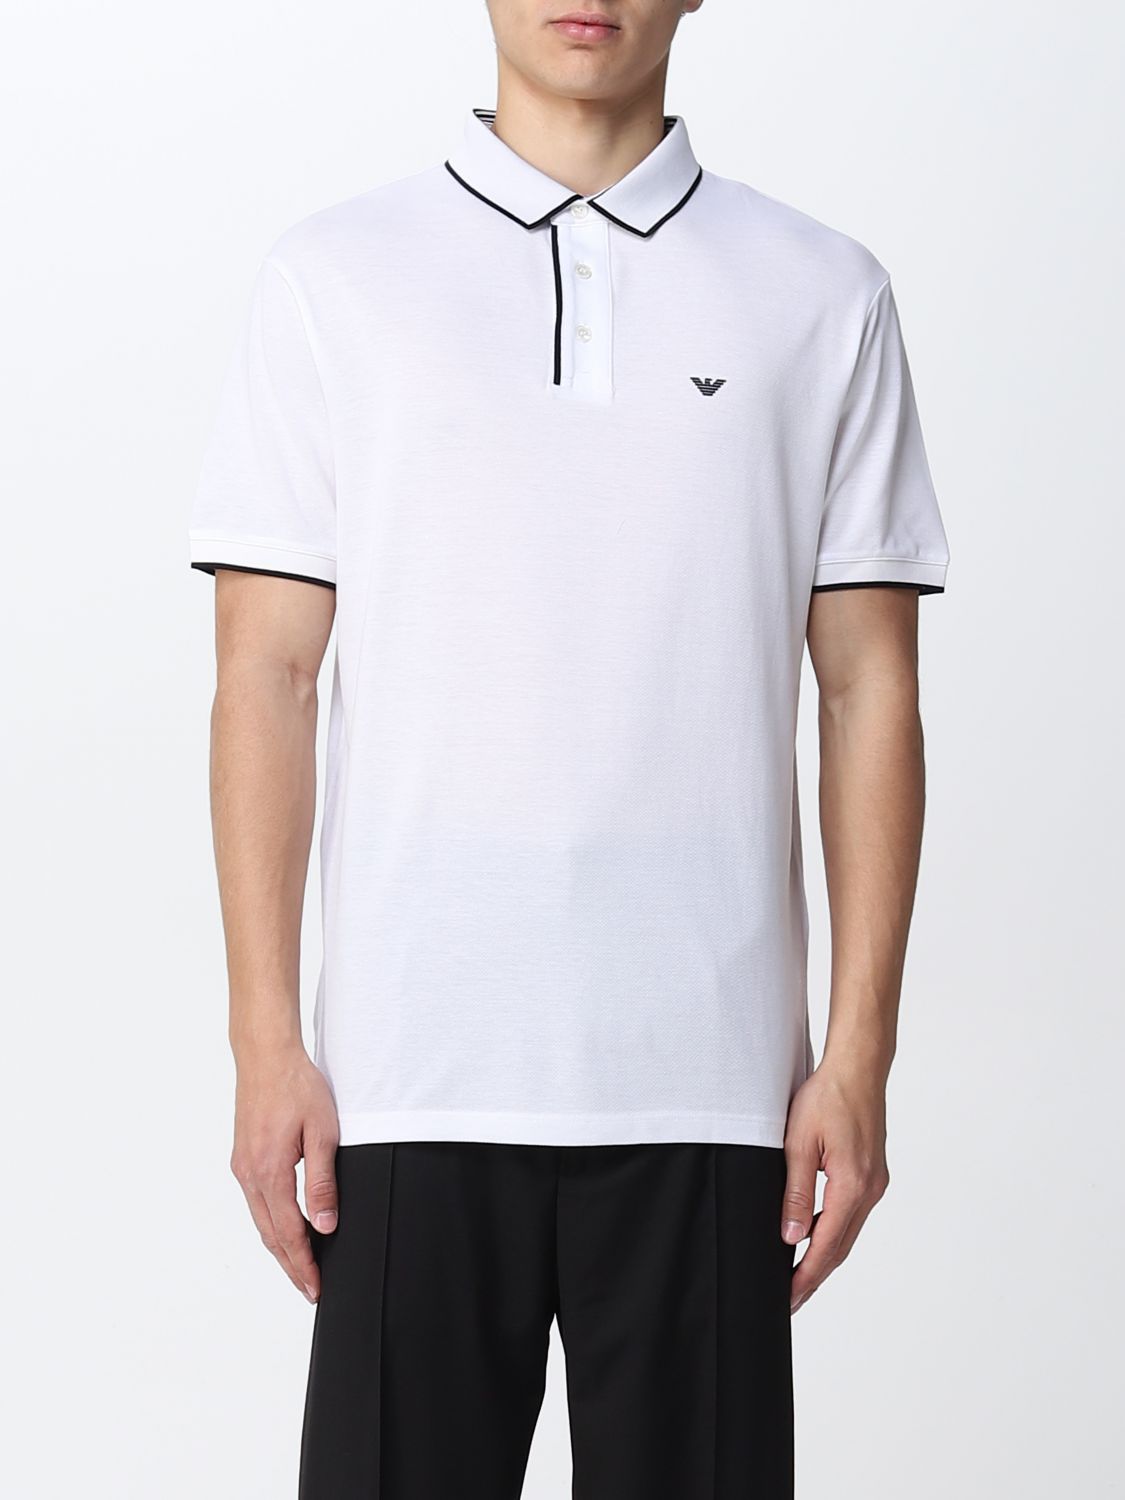 EMPORIO ARMANI: polo shirt for man - White | Emporio Armani polo shirt ...